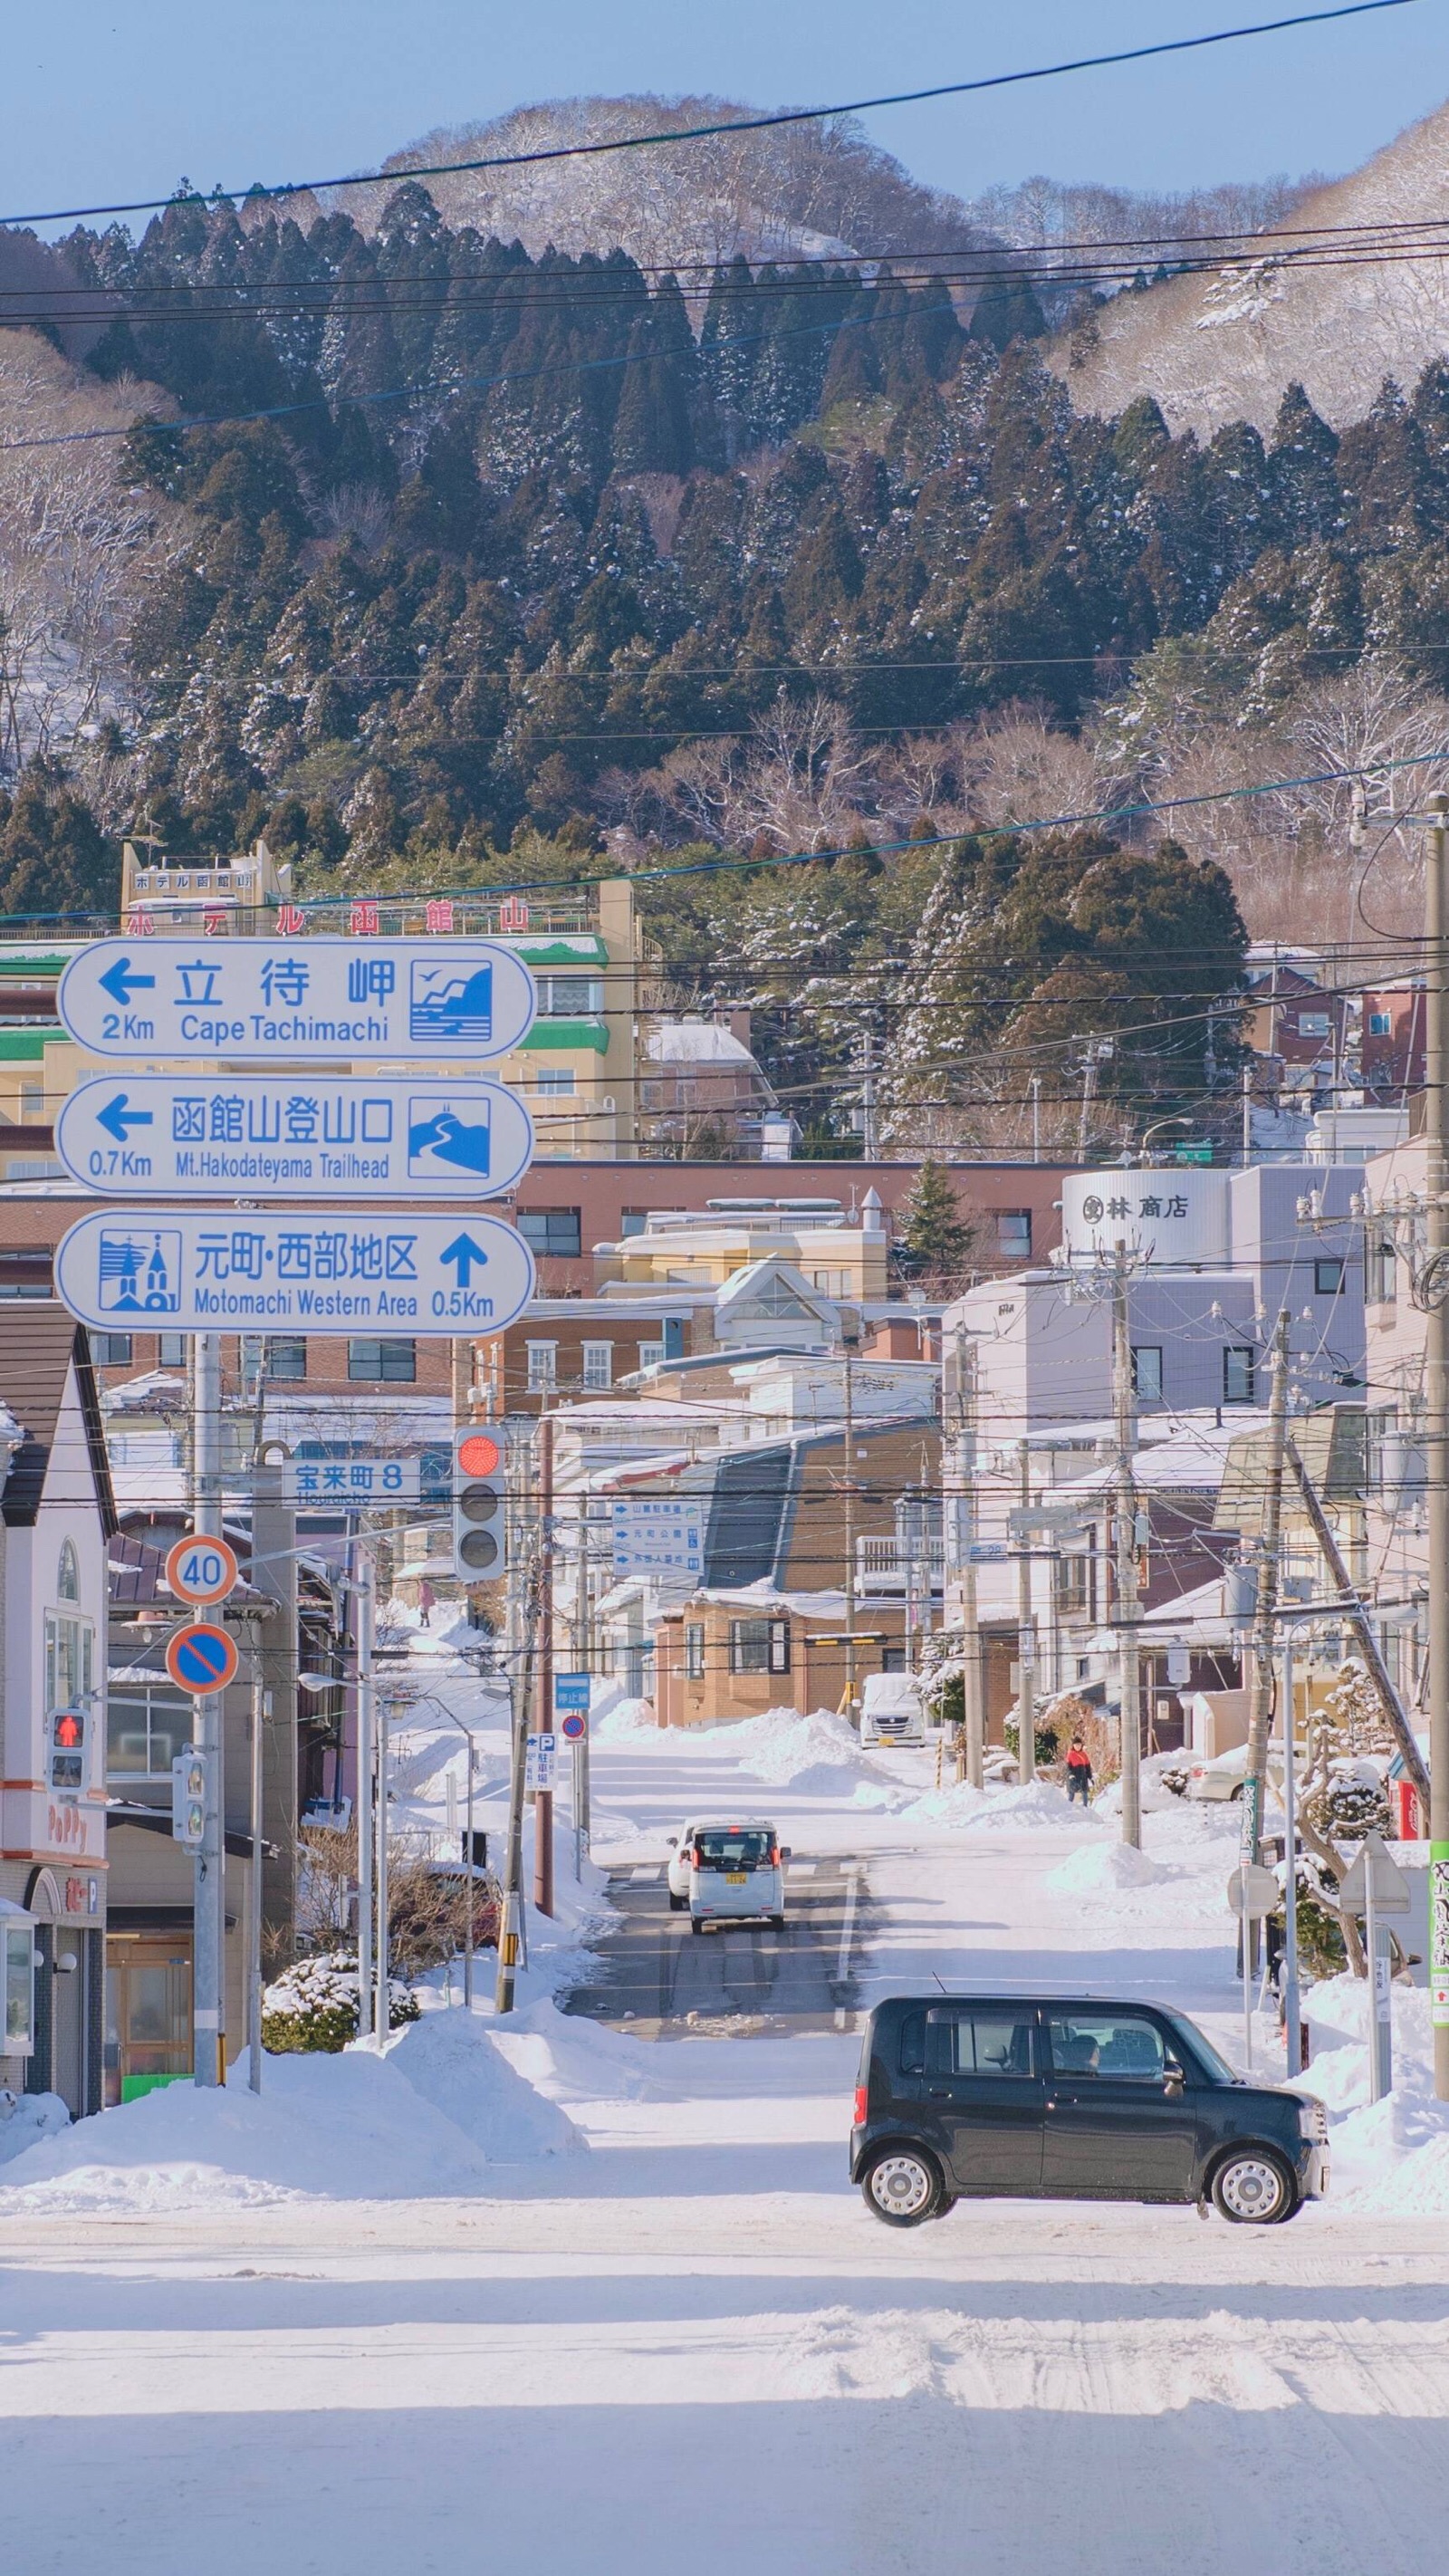 冬日的北海道摄影师 渲染一个嘉 堆糖 美图壁纸兴趣社区